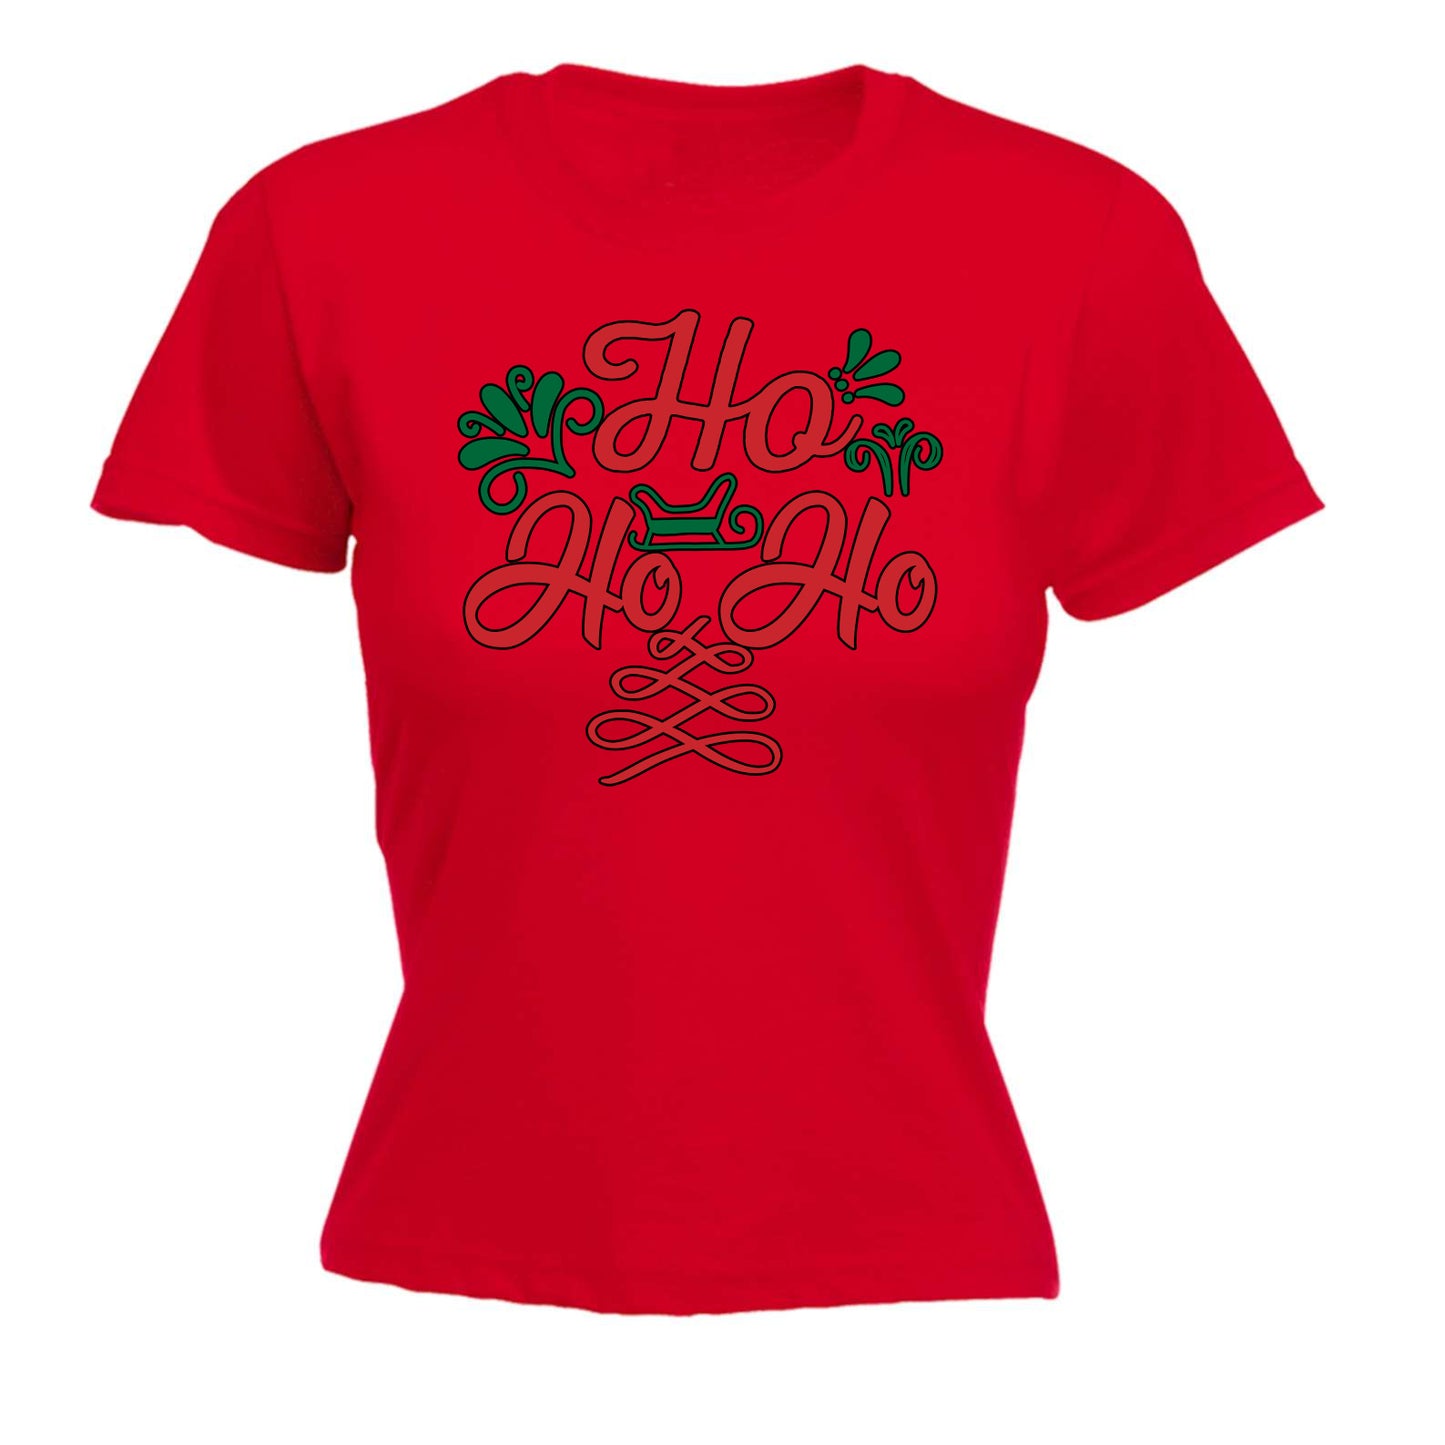 Ho Ho Ho Christmas Santa Xmas - Funny Womens T-Shirt Tshirt Tee Shirts